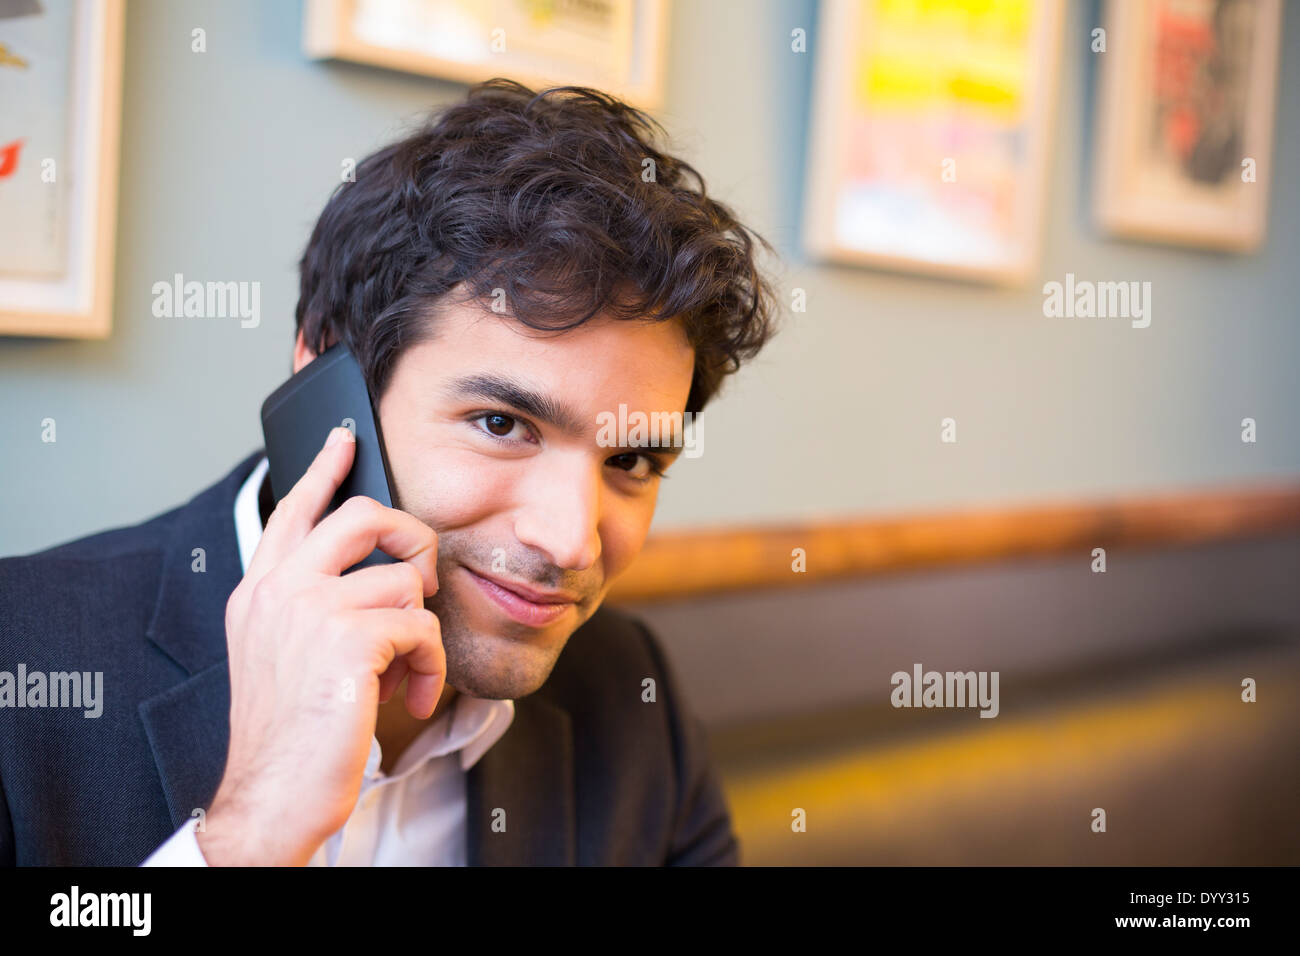 Maschio sorridente allegro ristorante smartphone Foto Stock